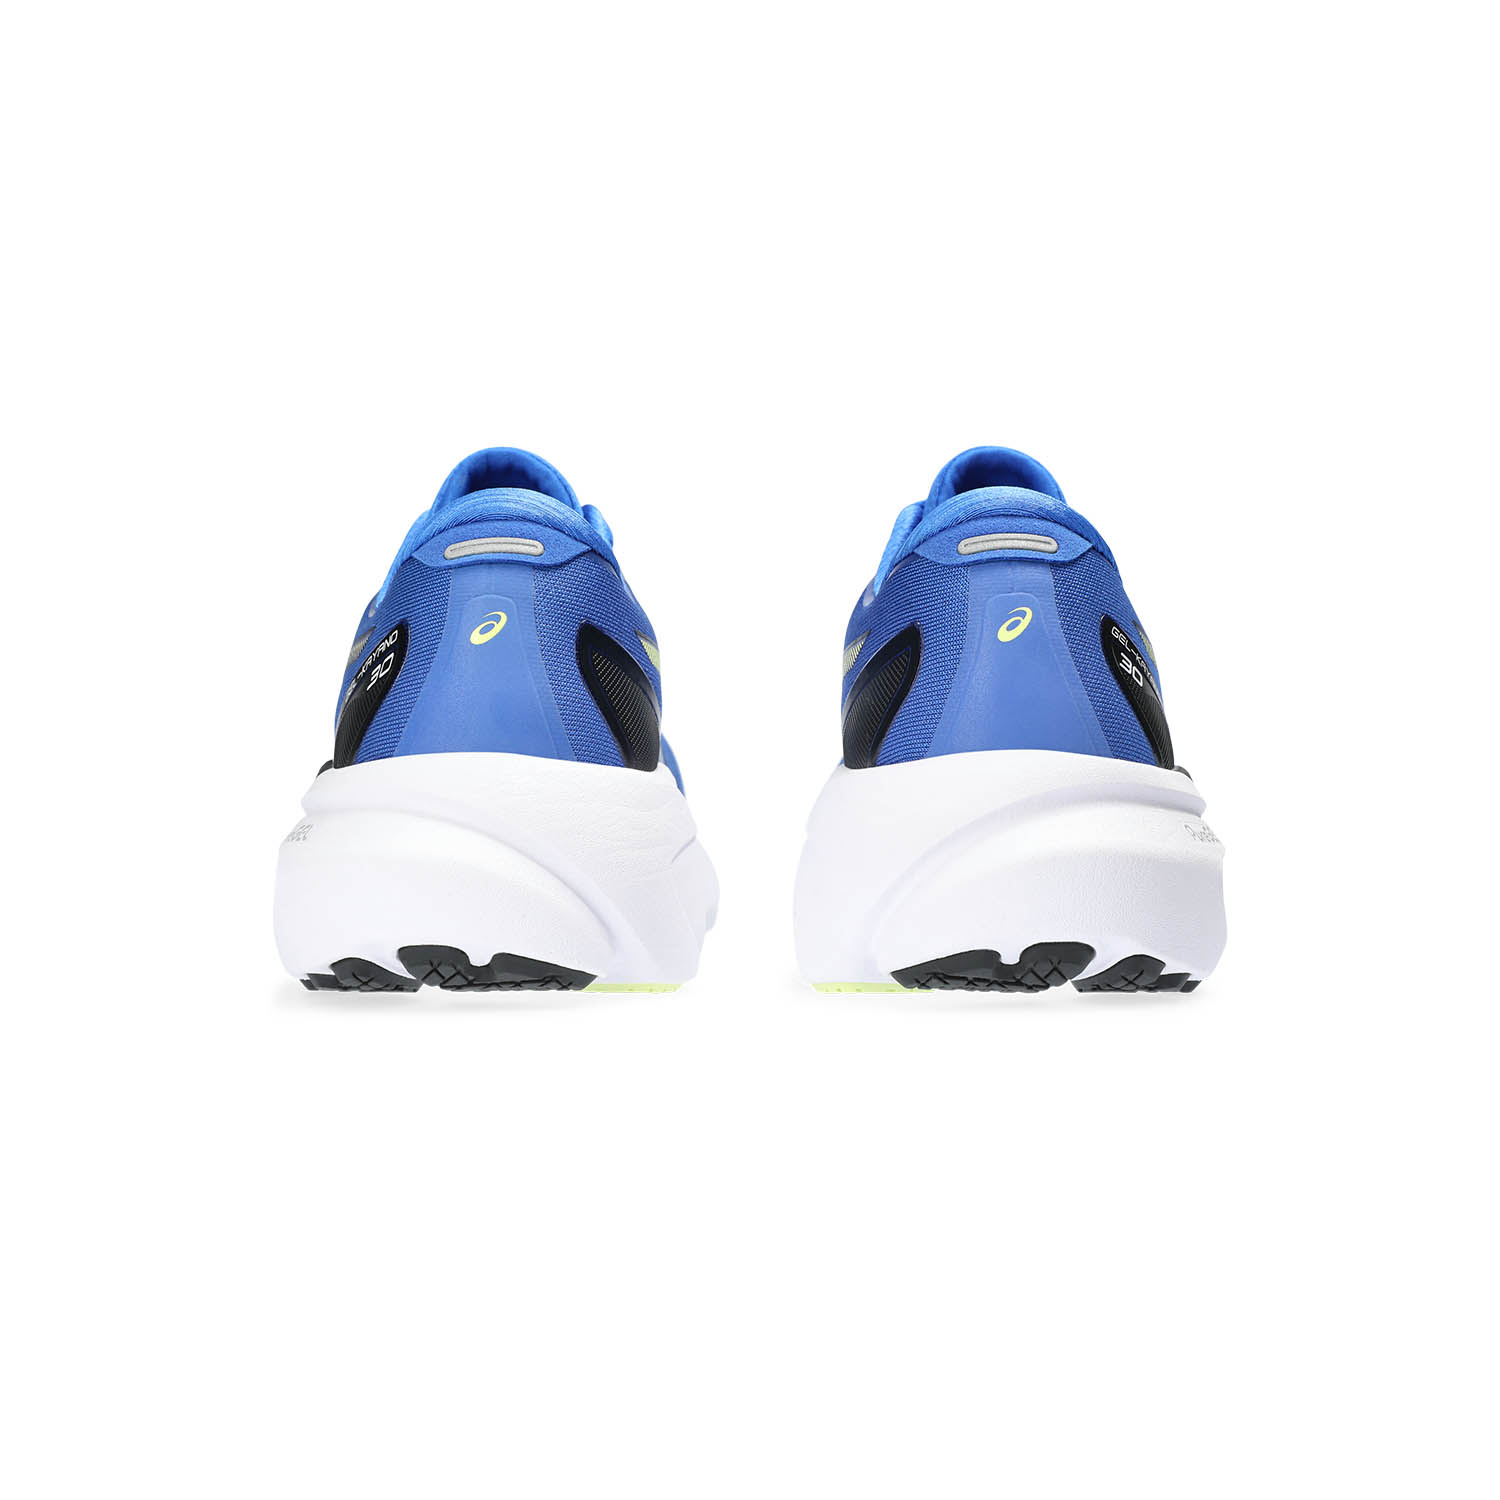 Asics Gel Kayano 30 Men's Running Shoes - Illusion Blue